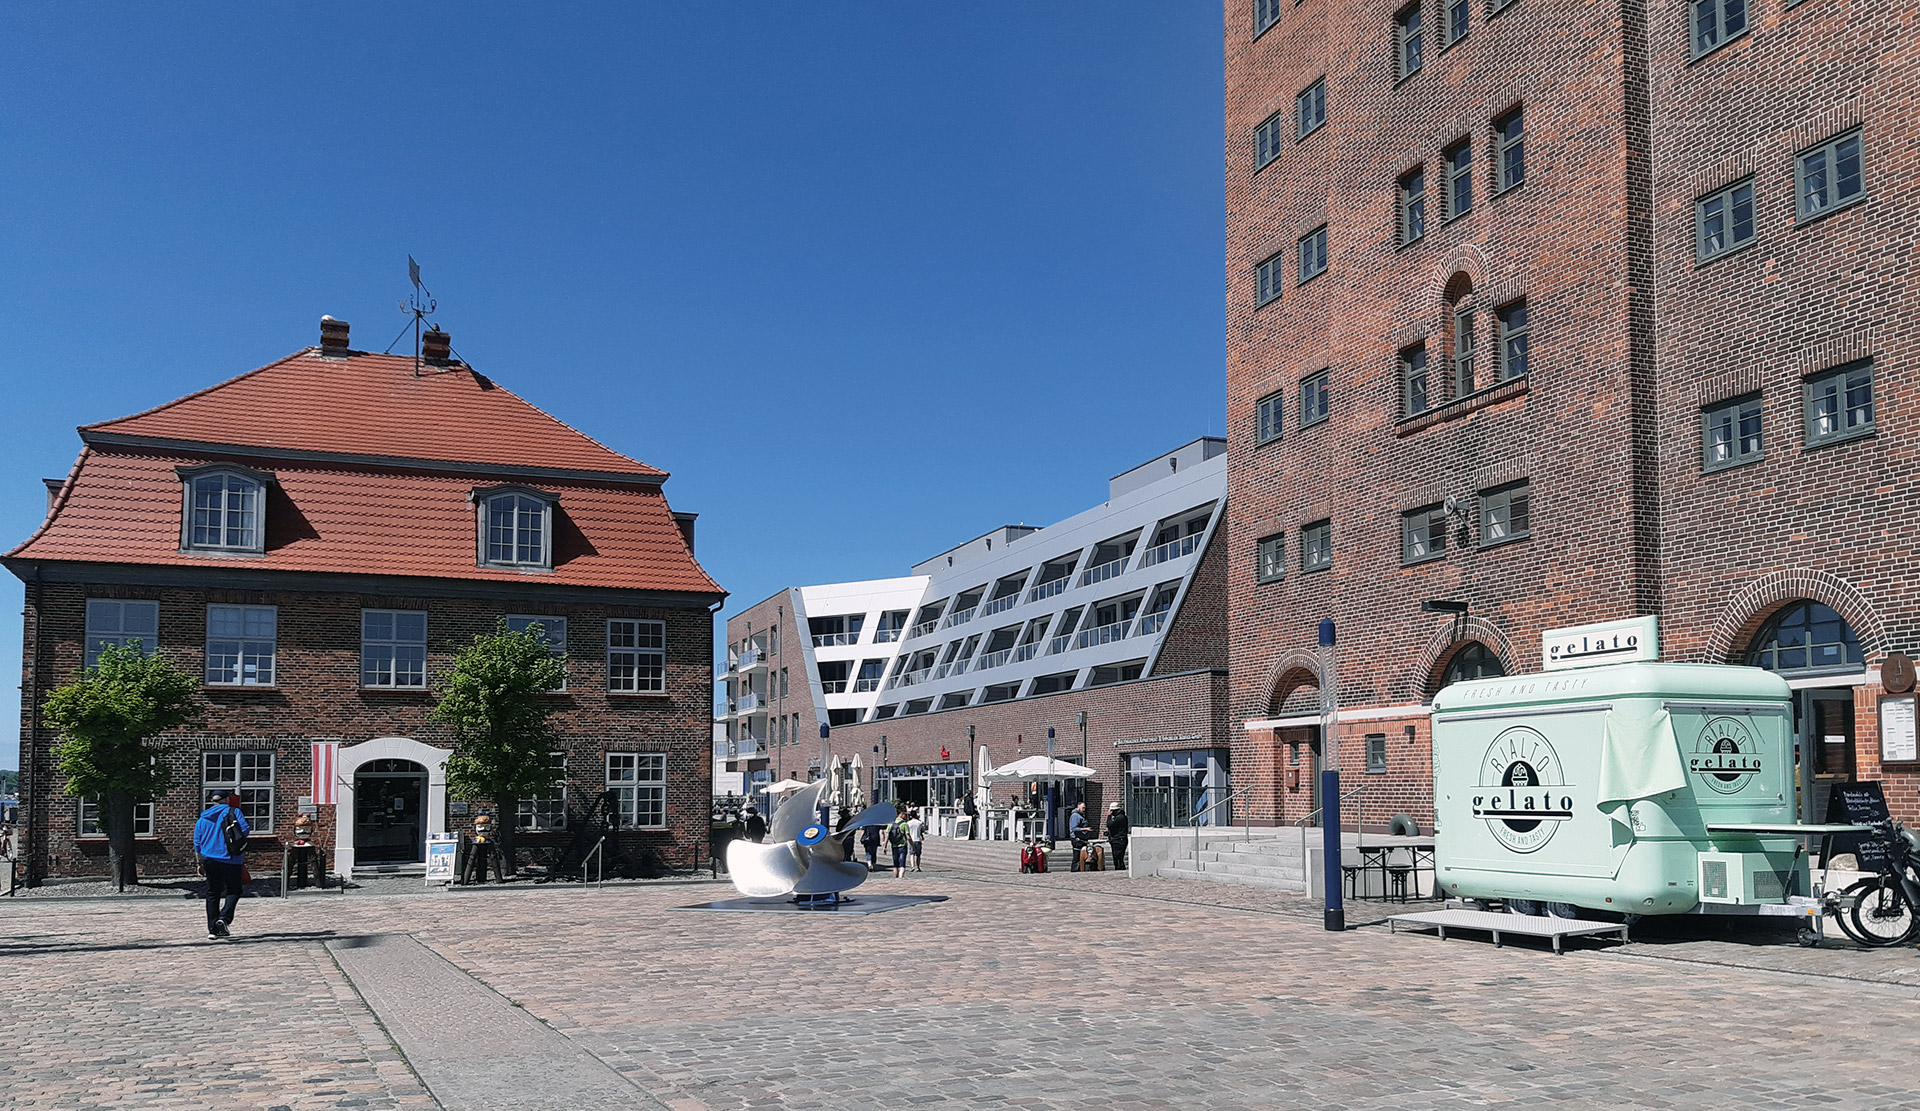 Ansicht des Gebäudes Hafenspitze Wismar am Alten Hafen zwischen historischem Baumhaus und altem Getreidespeicher . Neubau Wohn- und Geschäftshaus Hafenspitze, Wismar